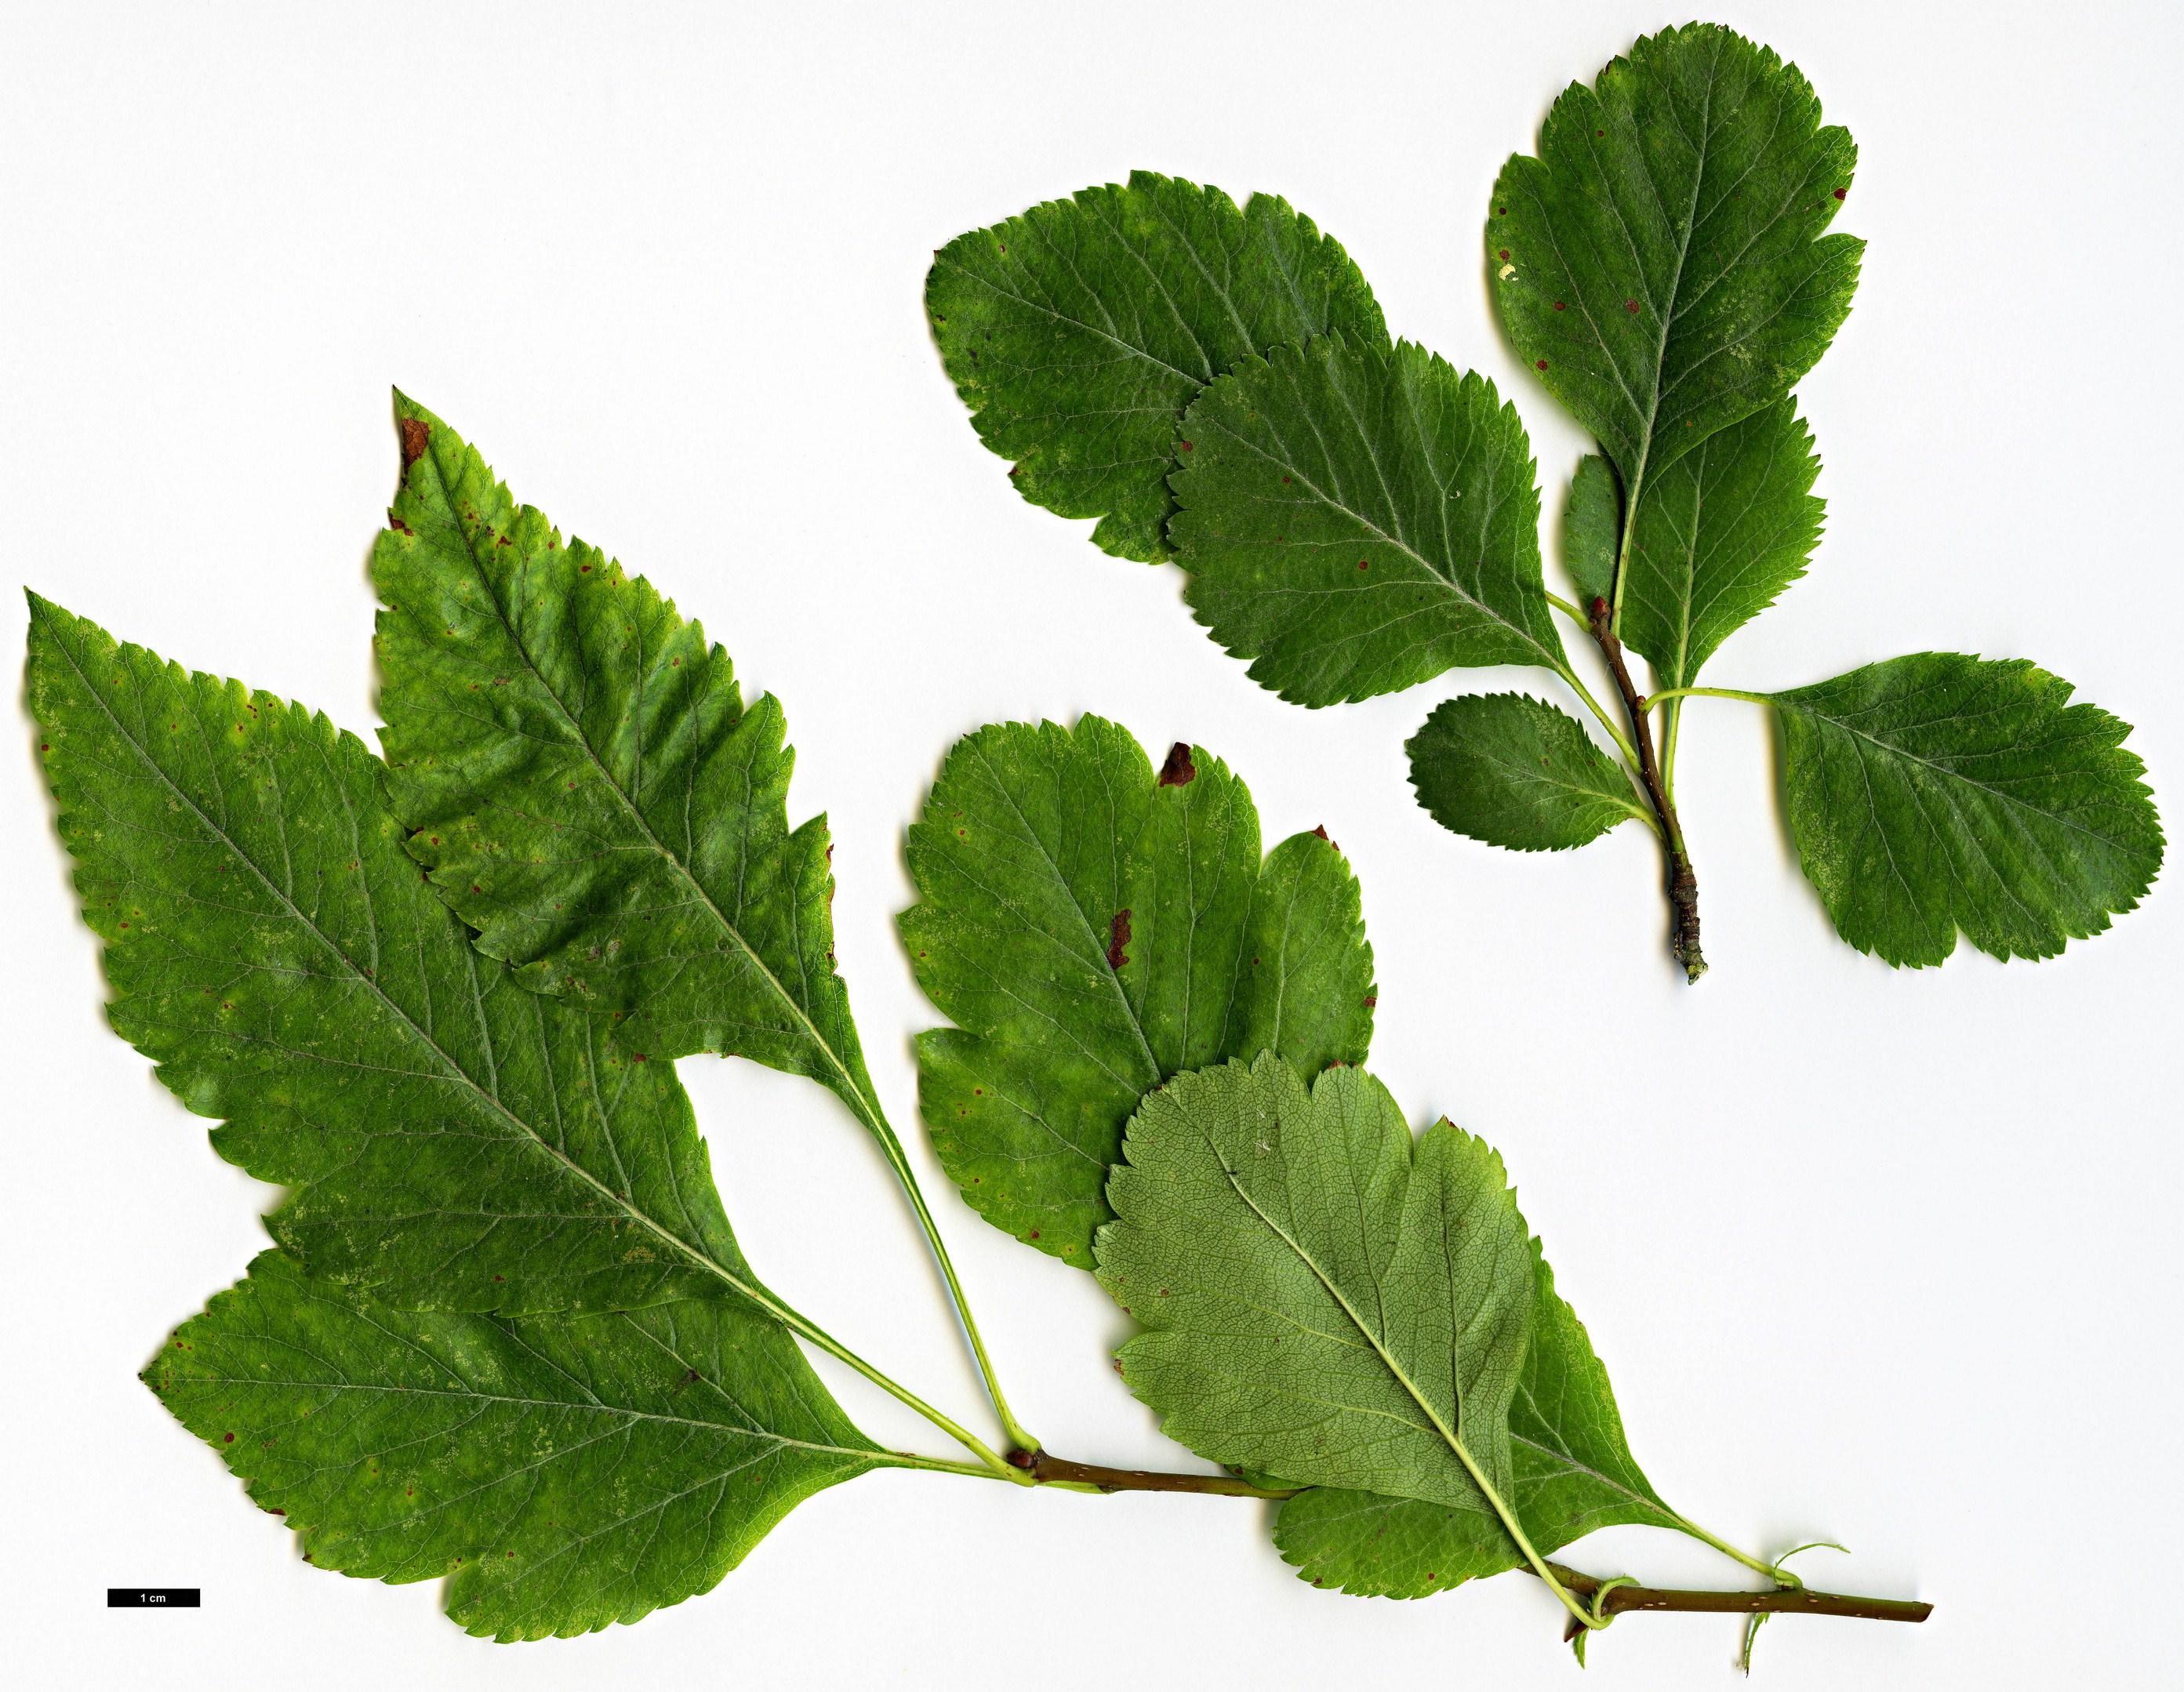 High resolution image: Family: Rosaceae - Genus: Crataegus - Taxon: douglassii